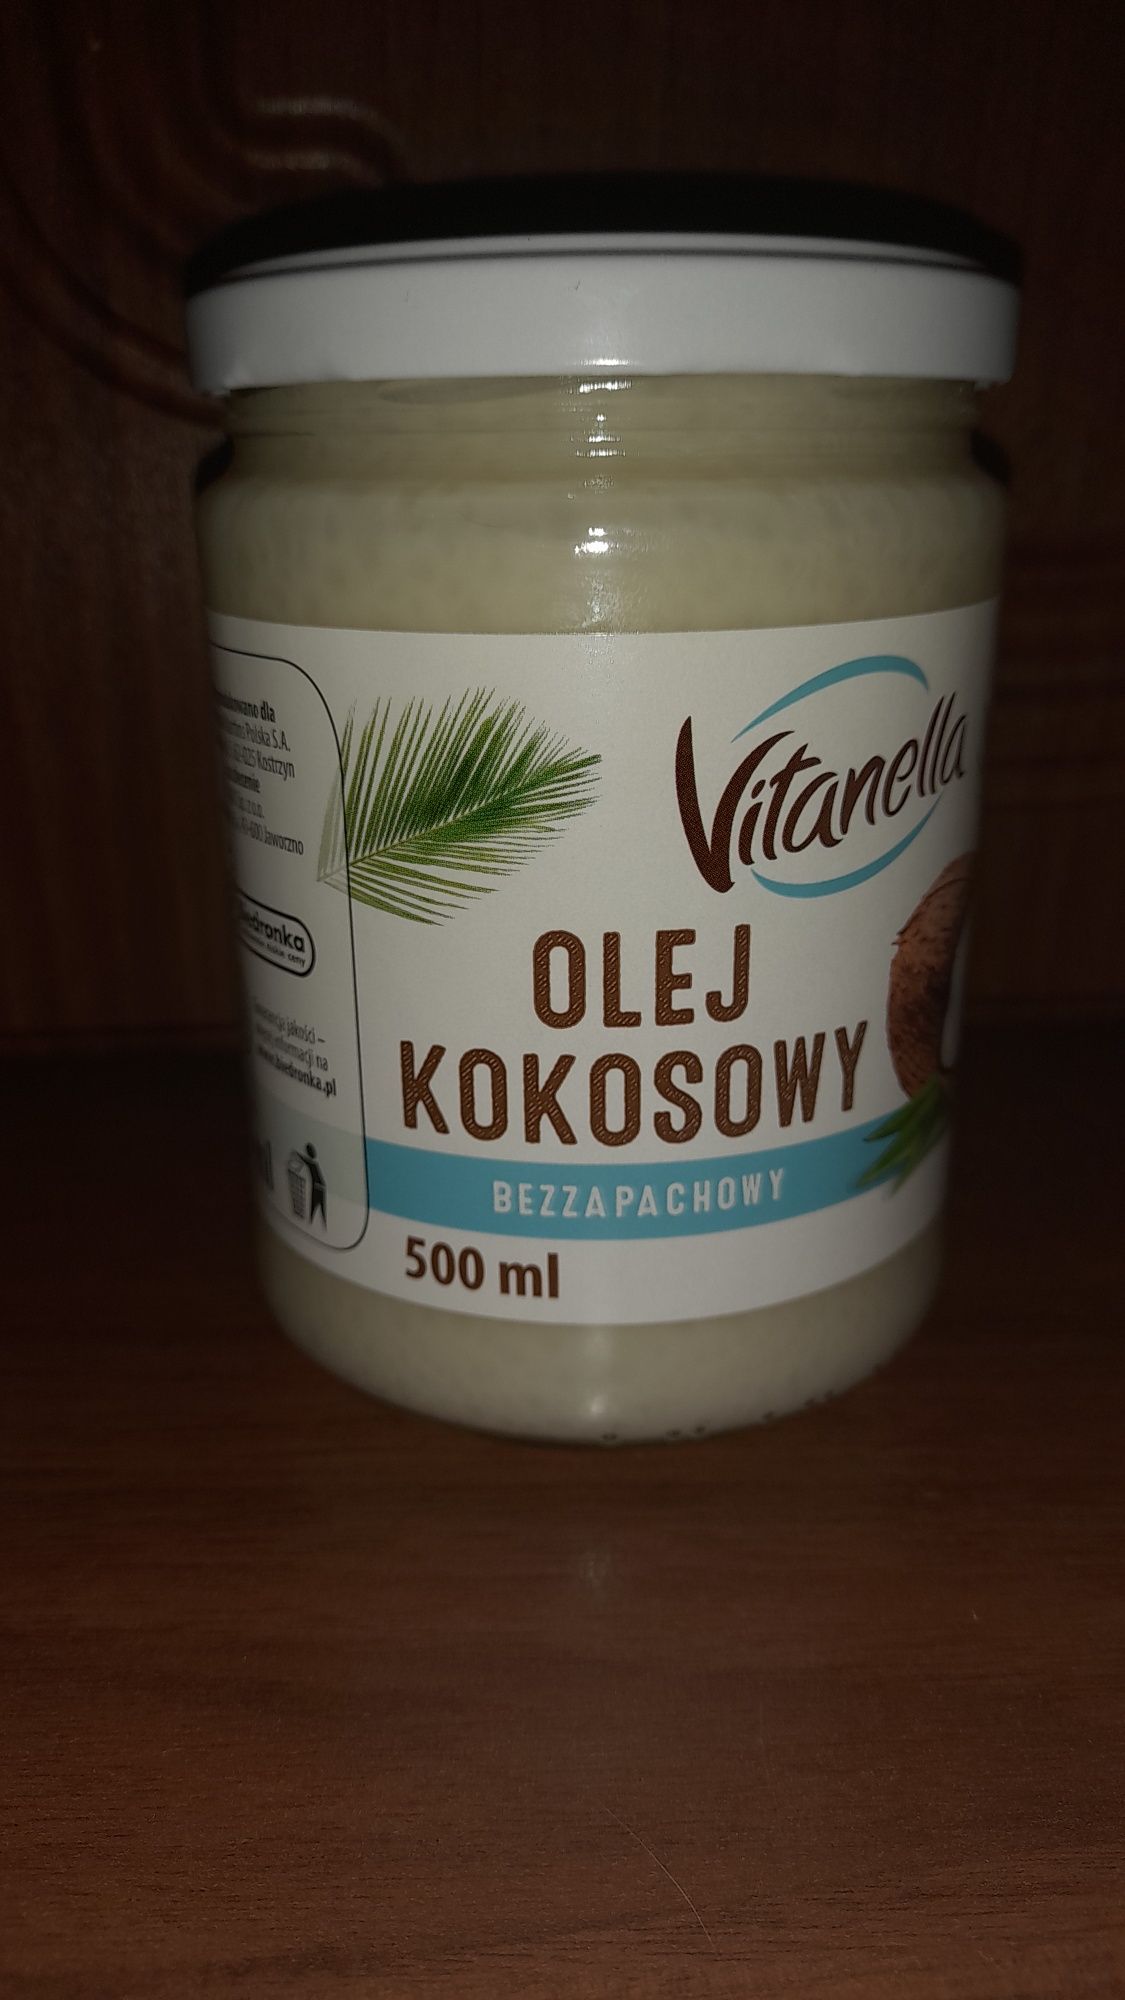 Кокосова олія,масло  Vitanella  500мл  Польща опт,роздріб